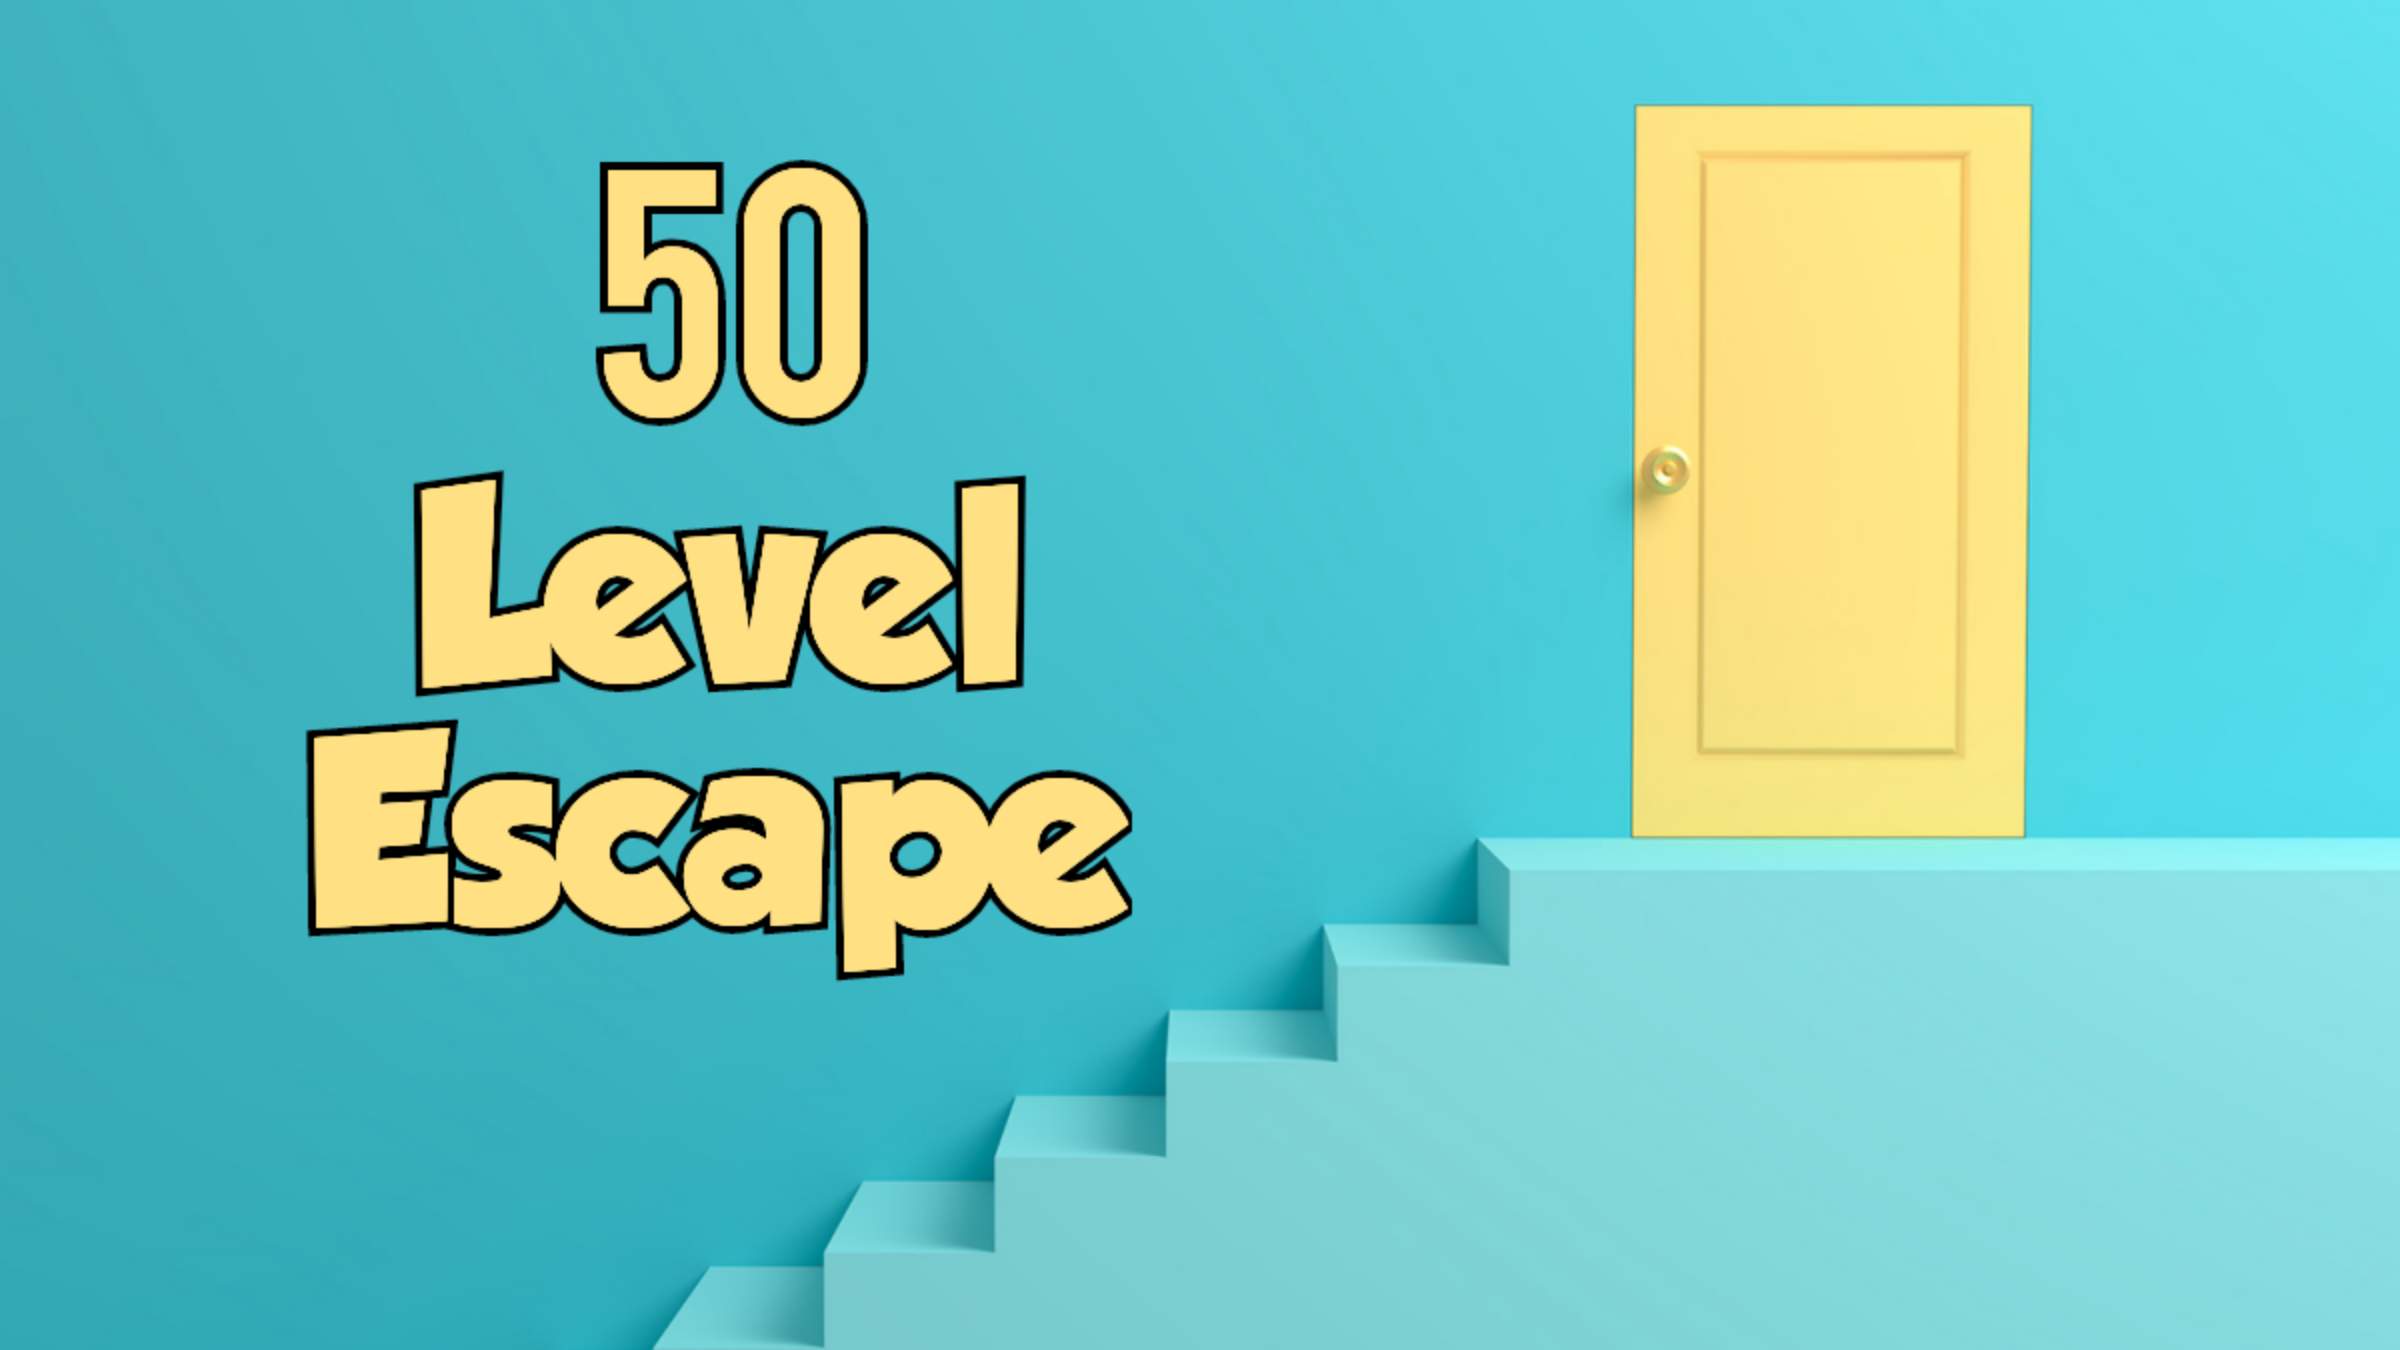 50 Level Escape